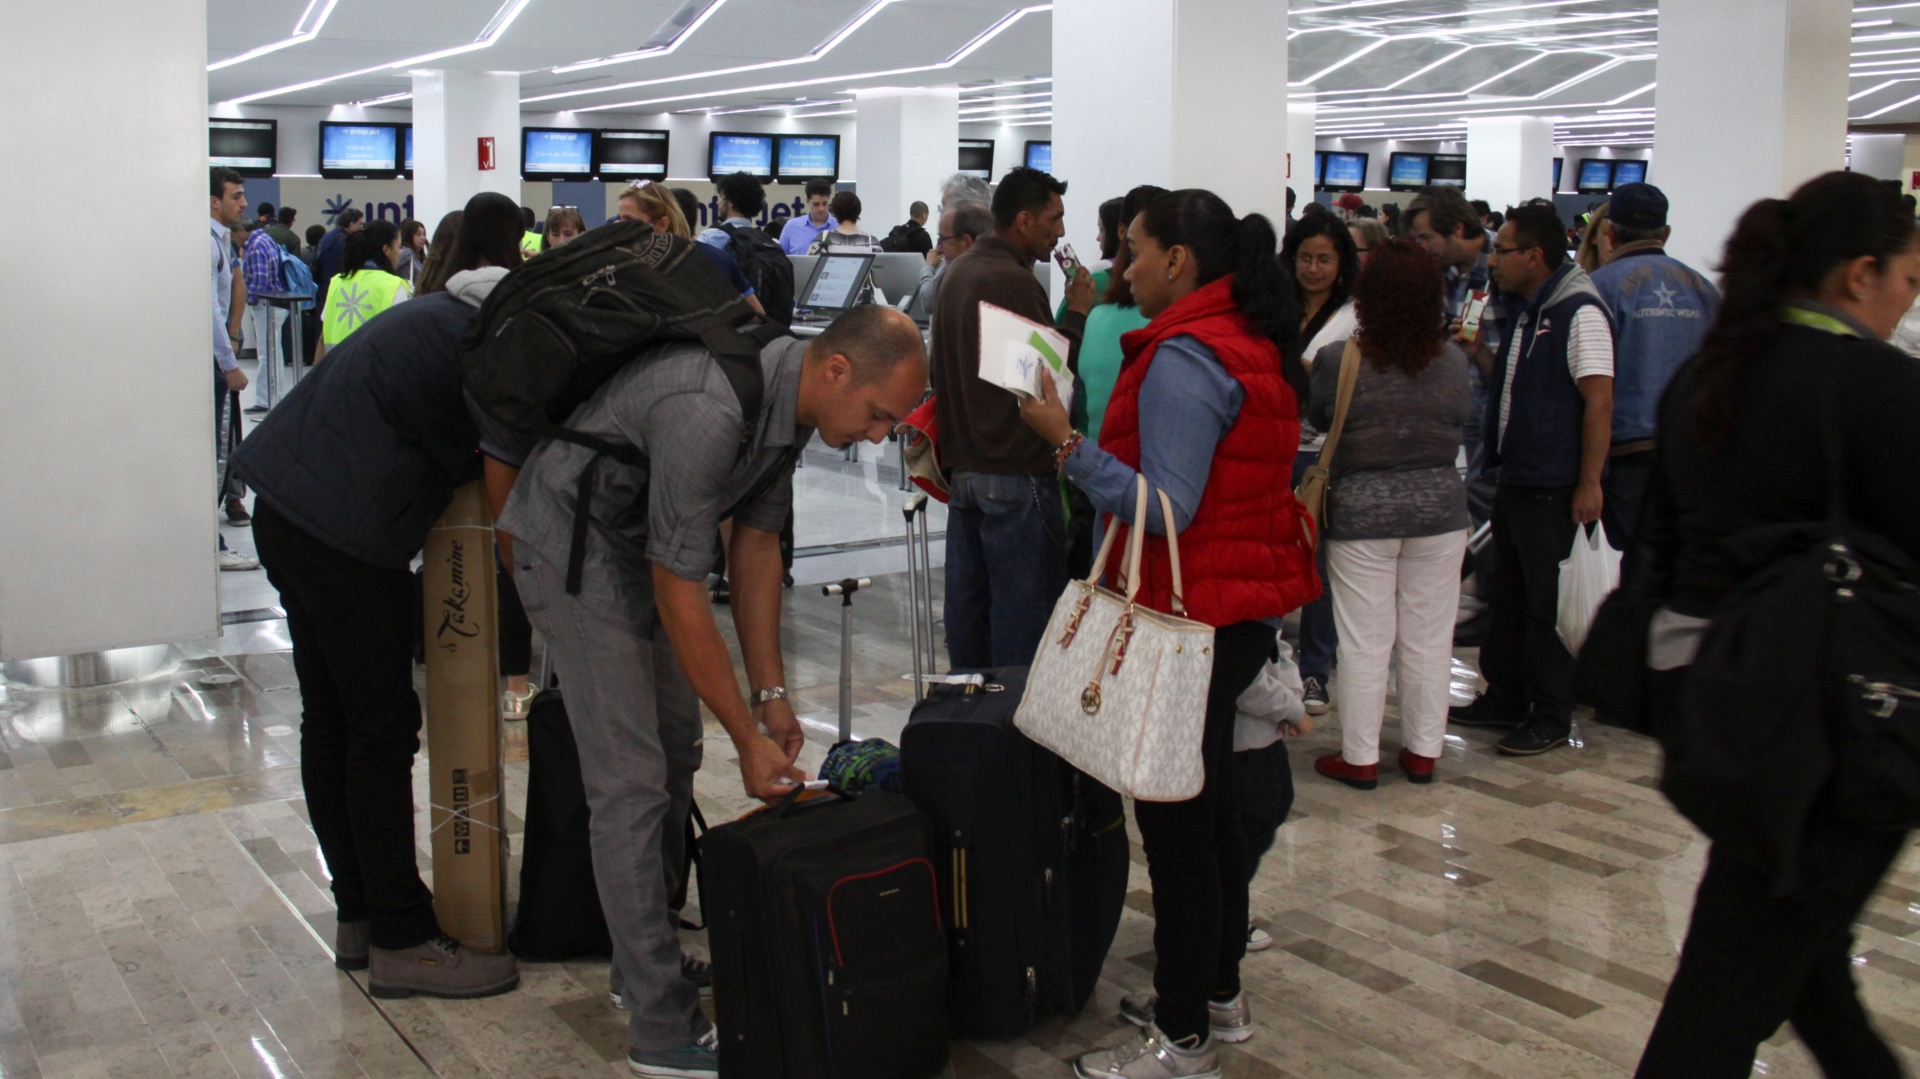 Una organización en defensa de los consumidores aseguró que acumulan quejas de hasta 200 pasajeros contra Interjet (Foto: Antonio Cruz/ Cuartoscuro)